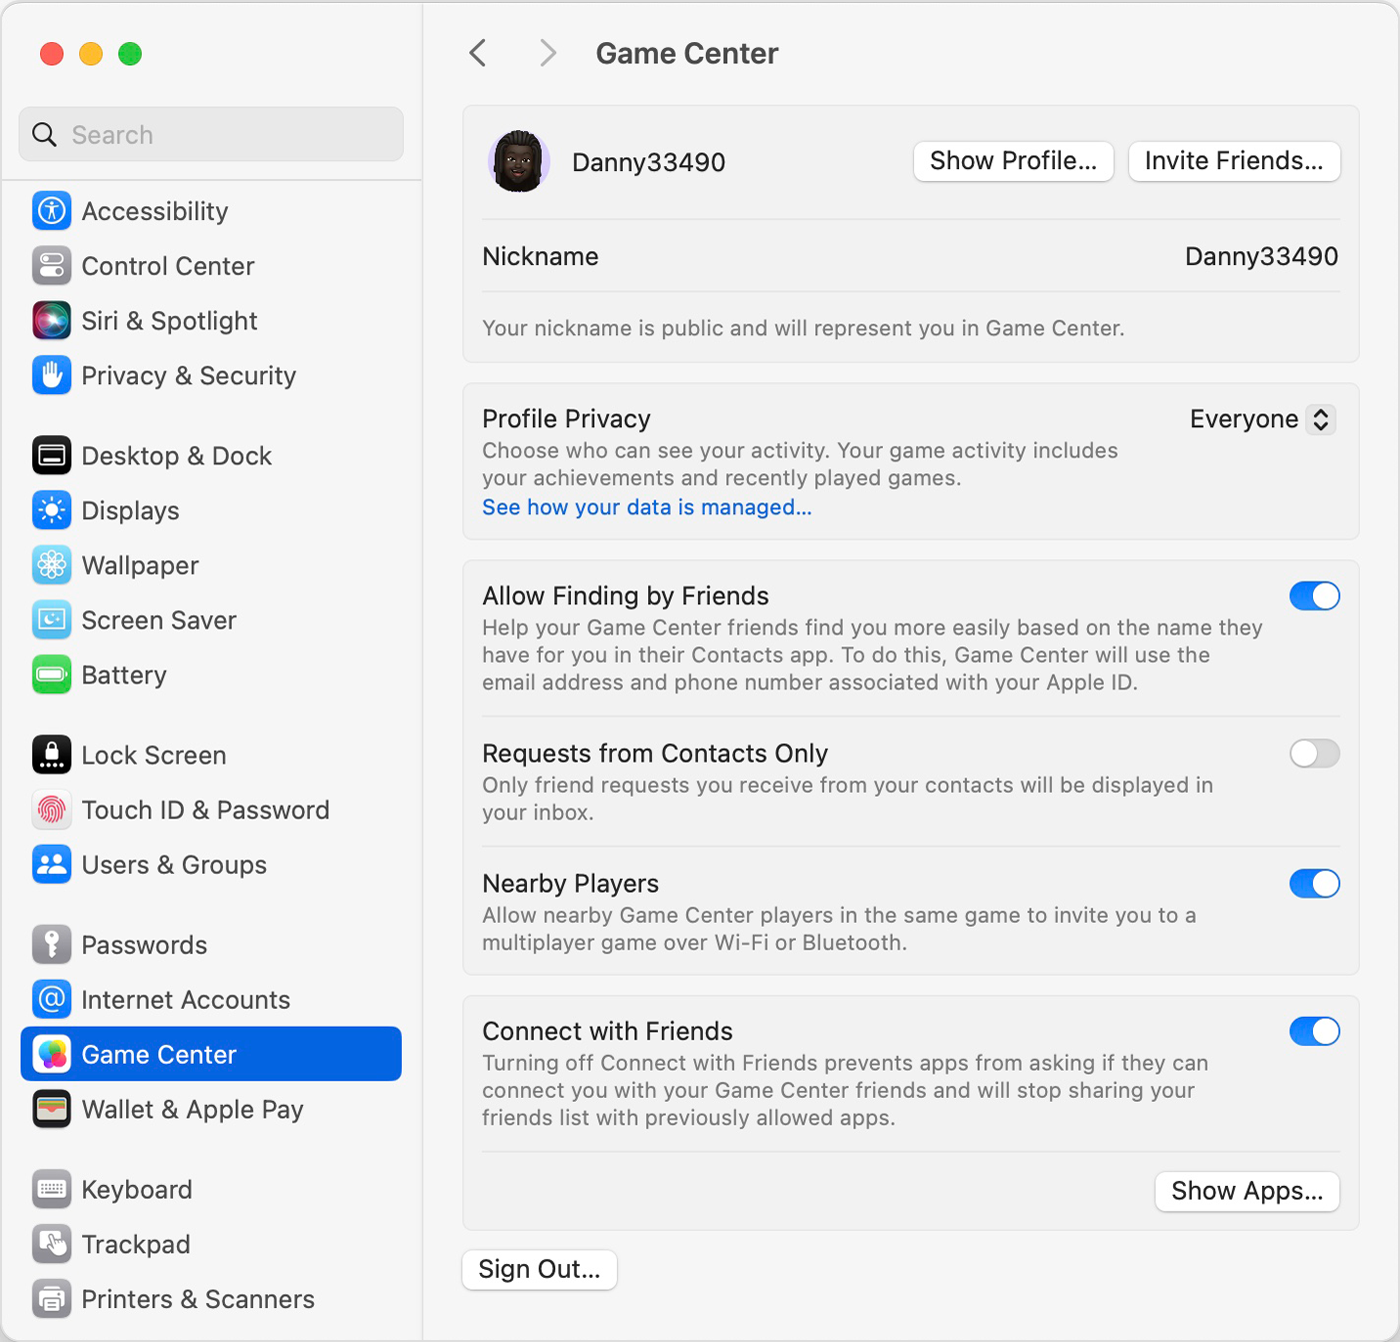 إعدادات Game Center على نظام التشغيل macOS. يمكنك تعديل ملف التعريف الخاص بك واسمك المستعار والخيارات الأخرى.